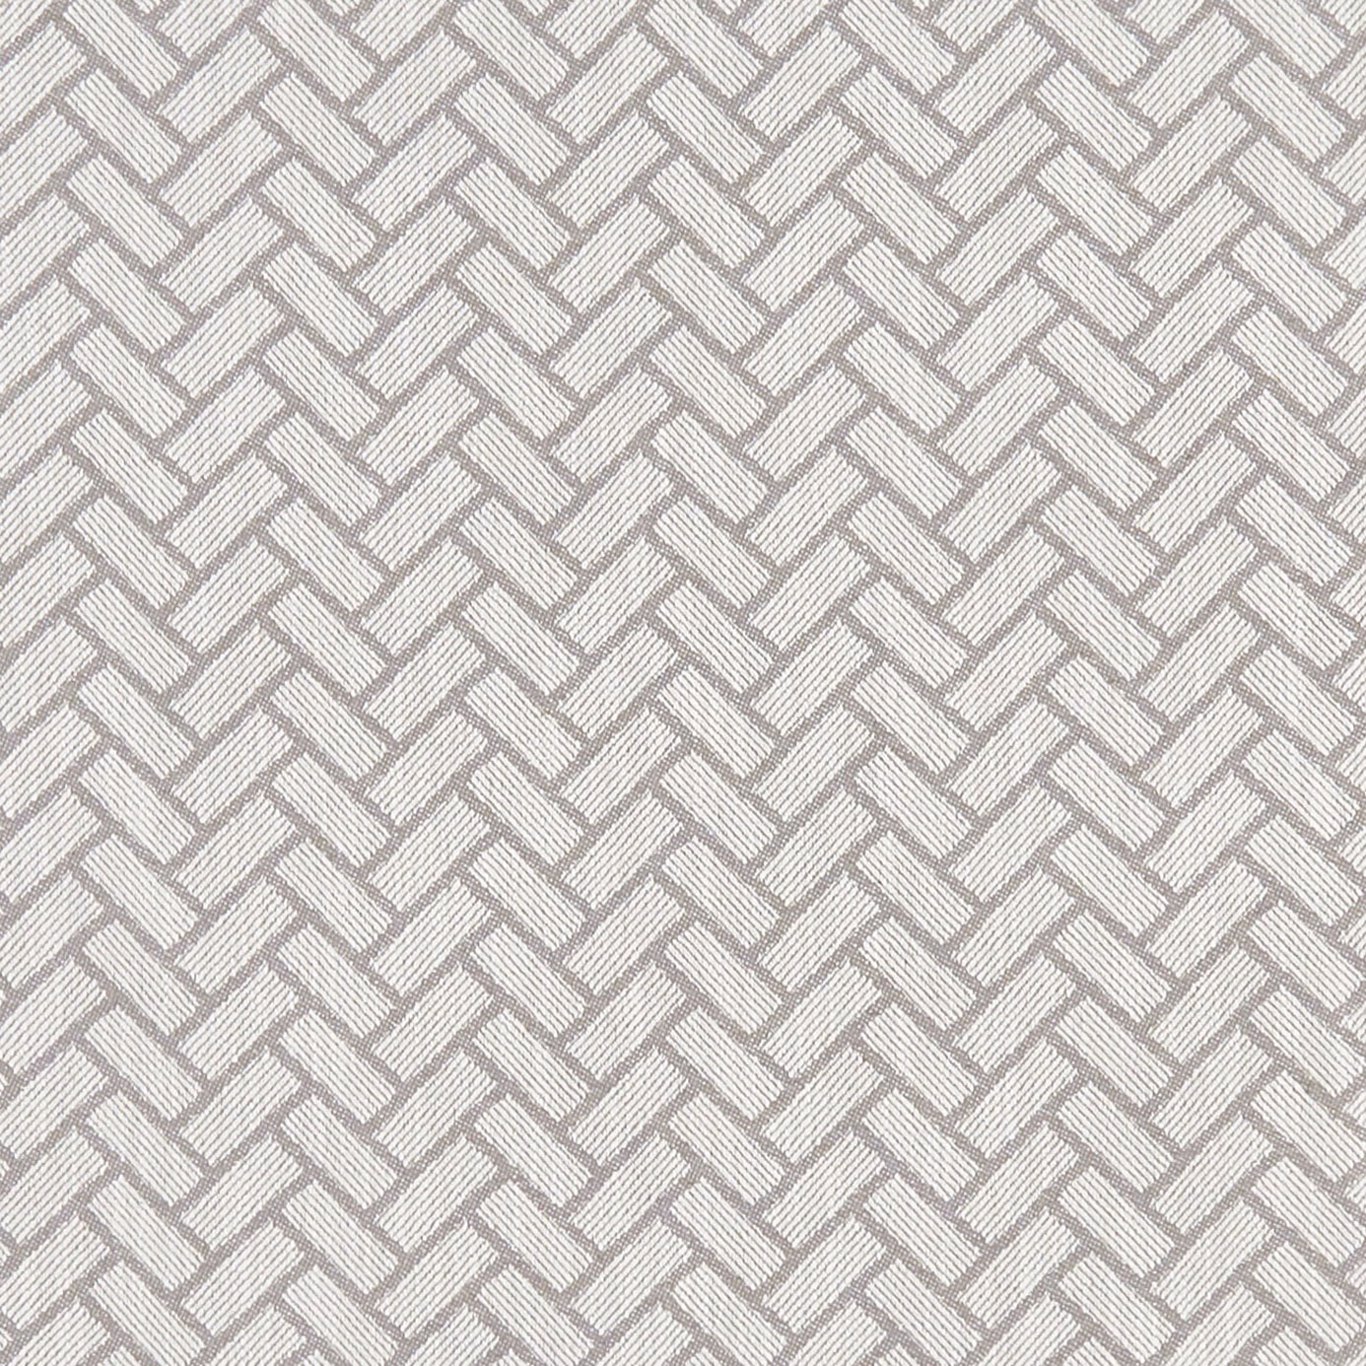 Urban Silver Fabric by CNC